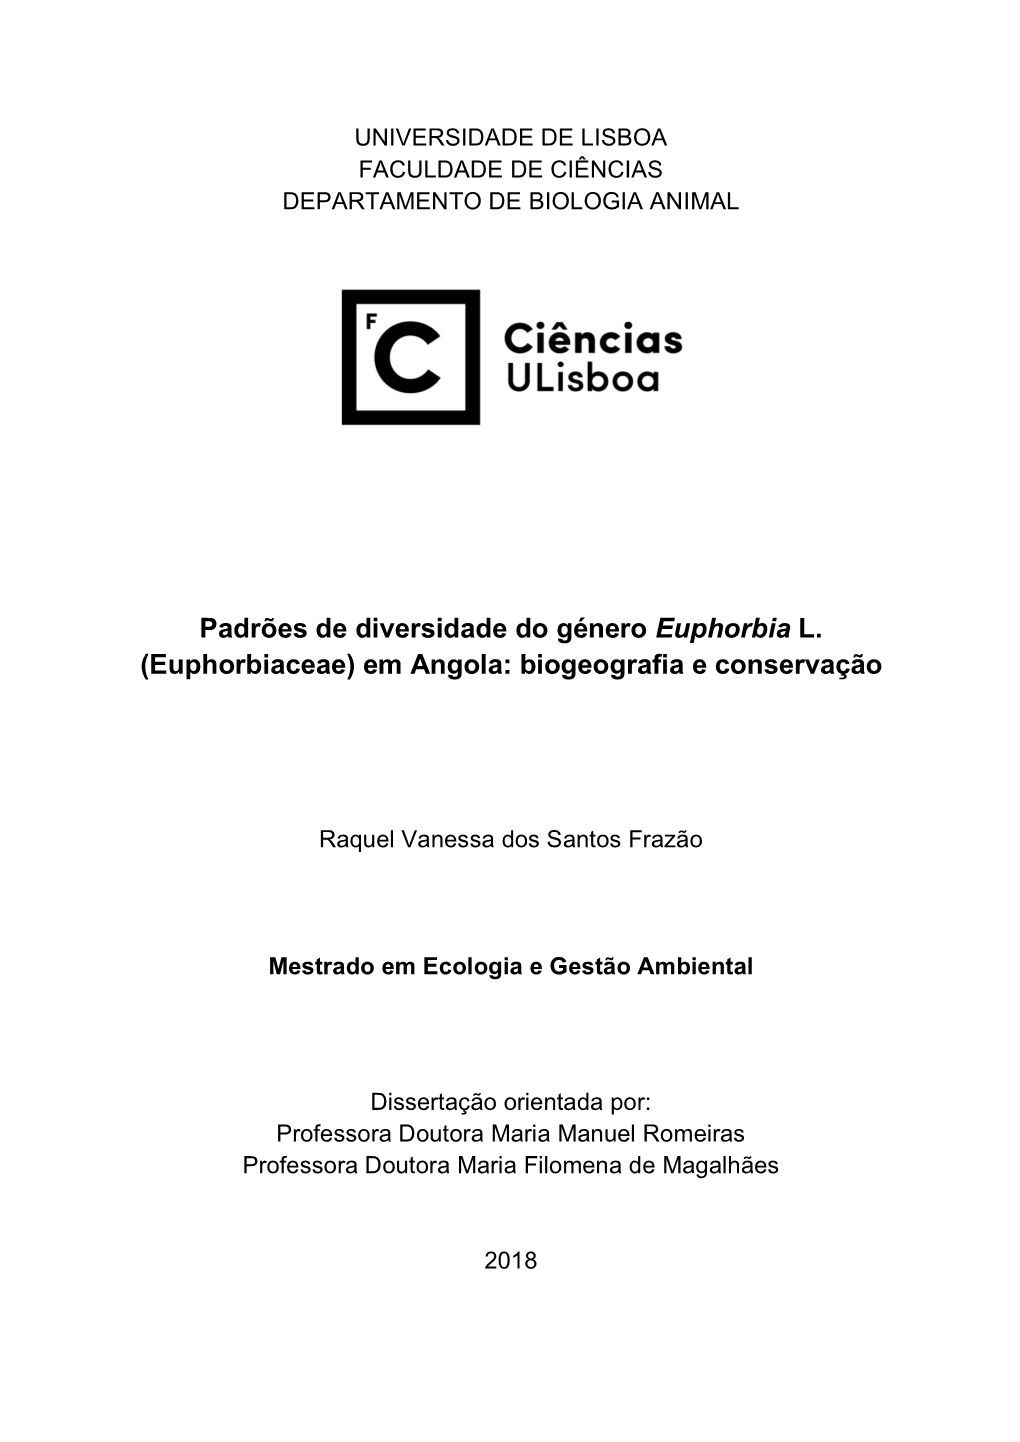 (Euphorbiaceae) Em Angola: Biogeografia E Conservação